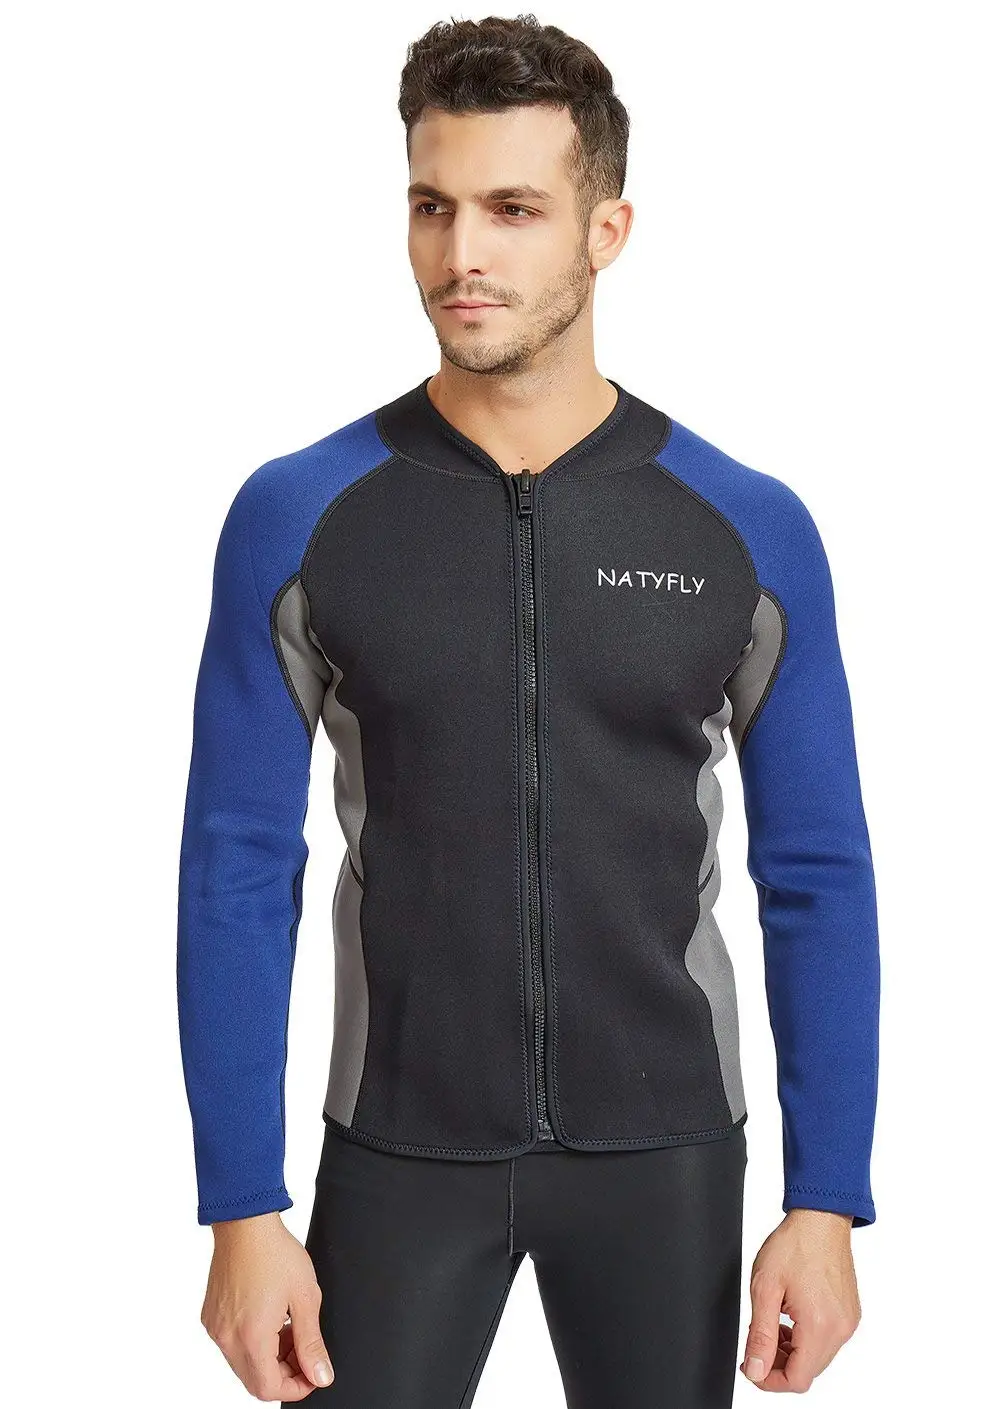 Buy NATYFLY Mens Wetsuit Jacket,Long Sleeve 2mm Neoprene Wetsuits Top ...